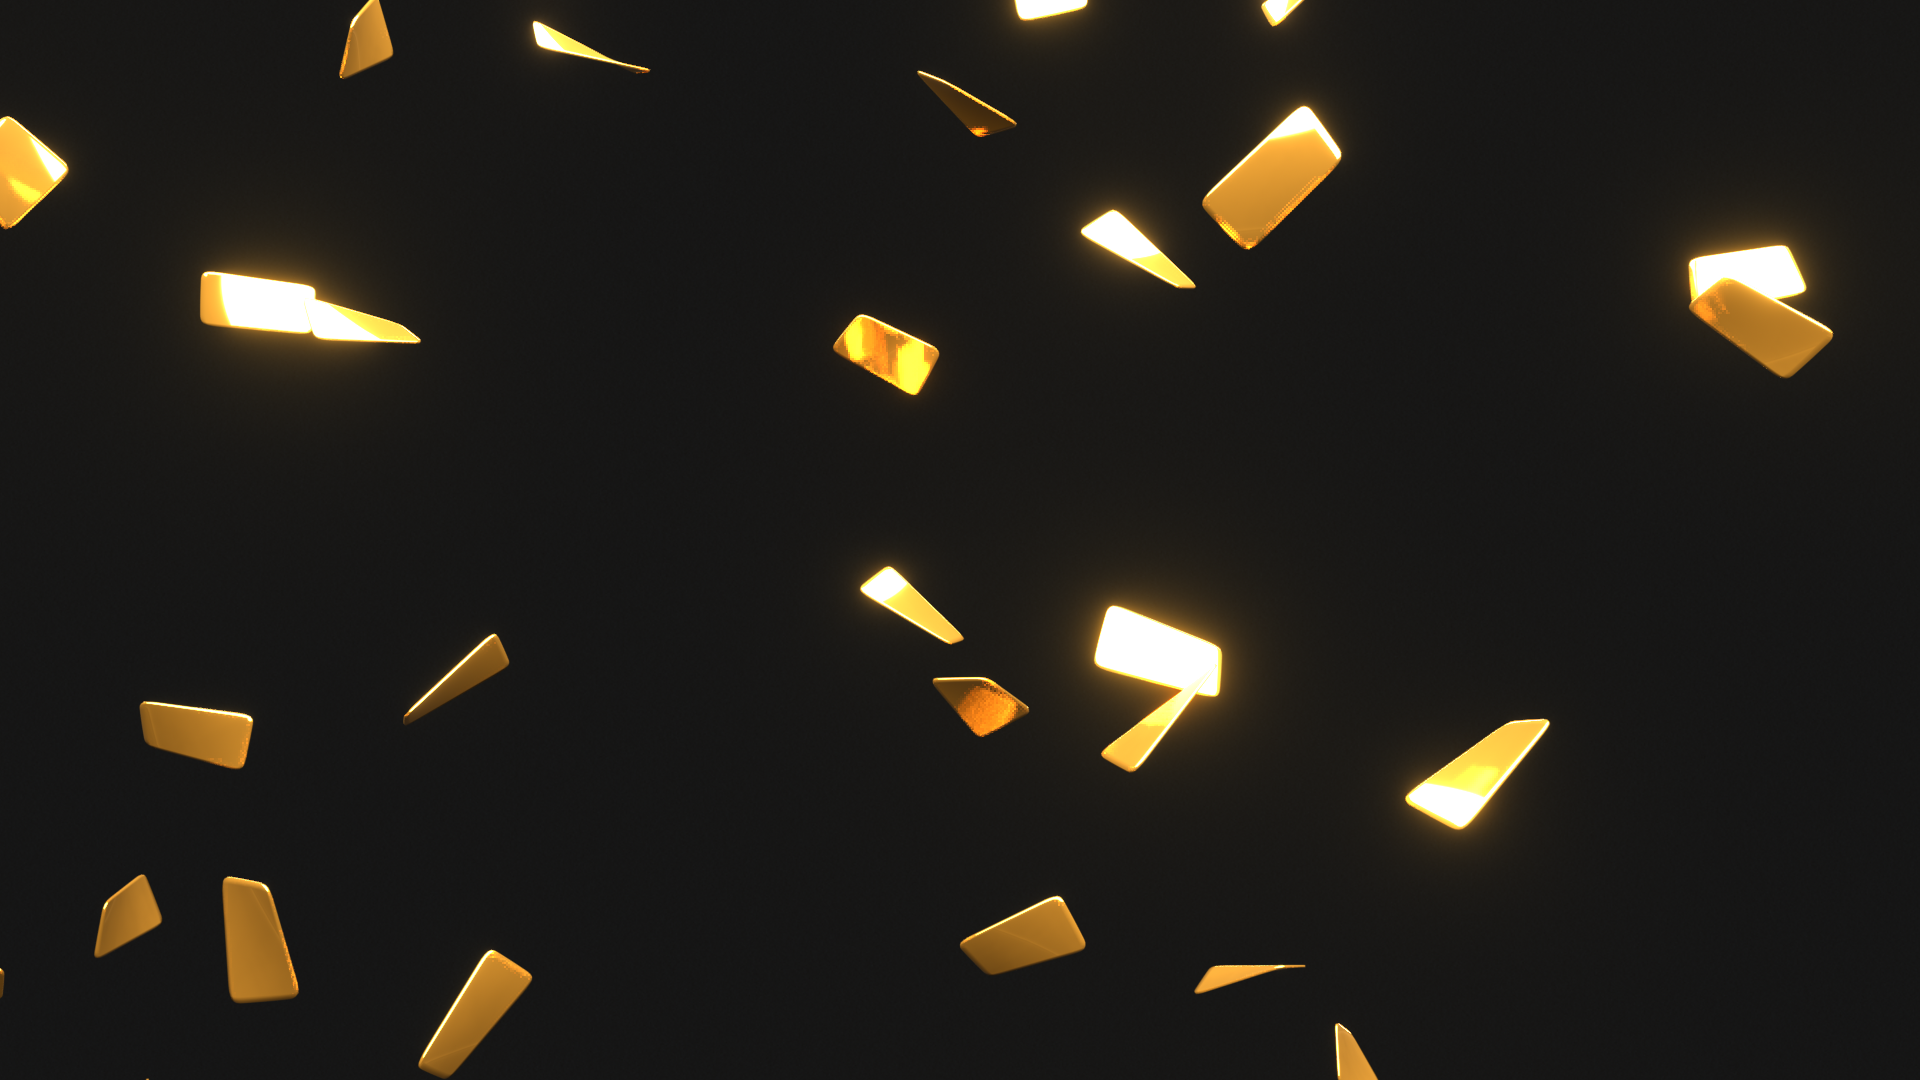 Gold Confetti: Xem những chiếc Confetti vàng cực xinh đẹp trong hình ảnh này. Những viên Confetti vàng sẽ được ném và bay lượn, tạo nên một bầu không khí phấn khích và tươi vui. Một hình ảnh đầy năng lượng và sự lạc quan, mà bạn sẽ không thể bỏ qua.